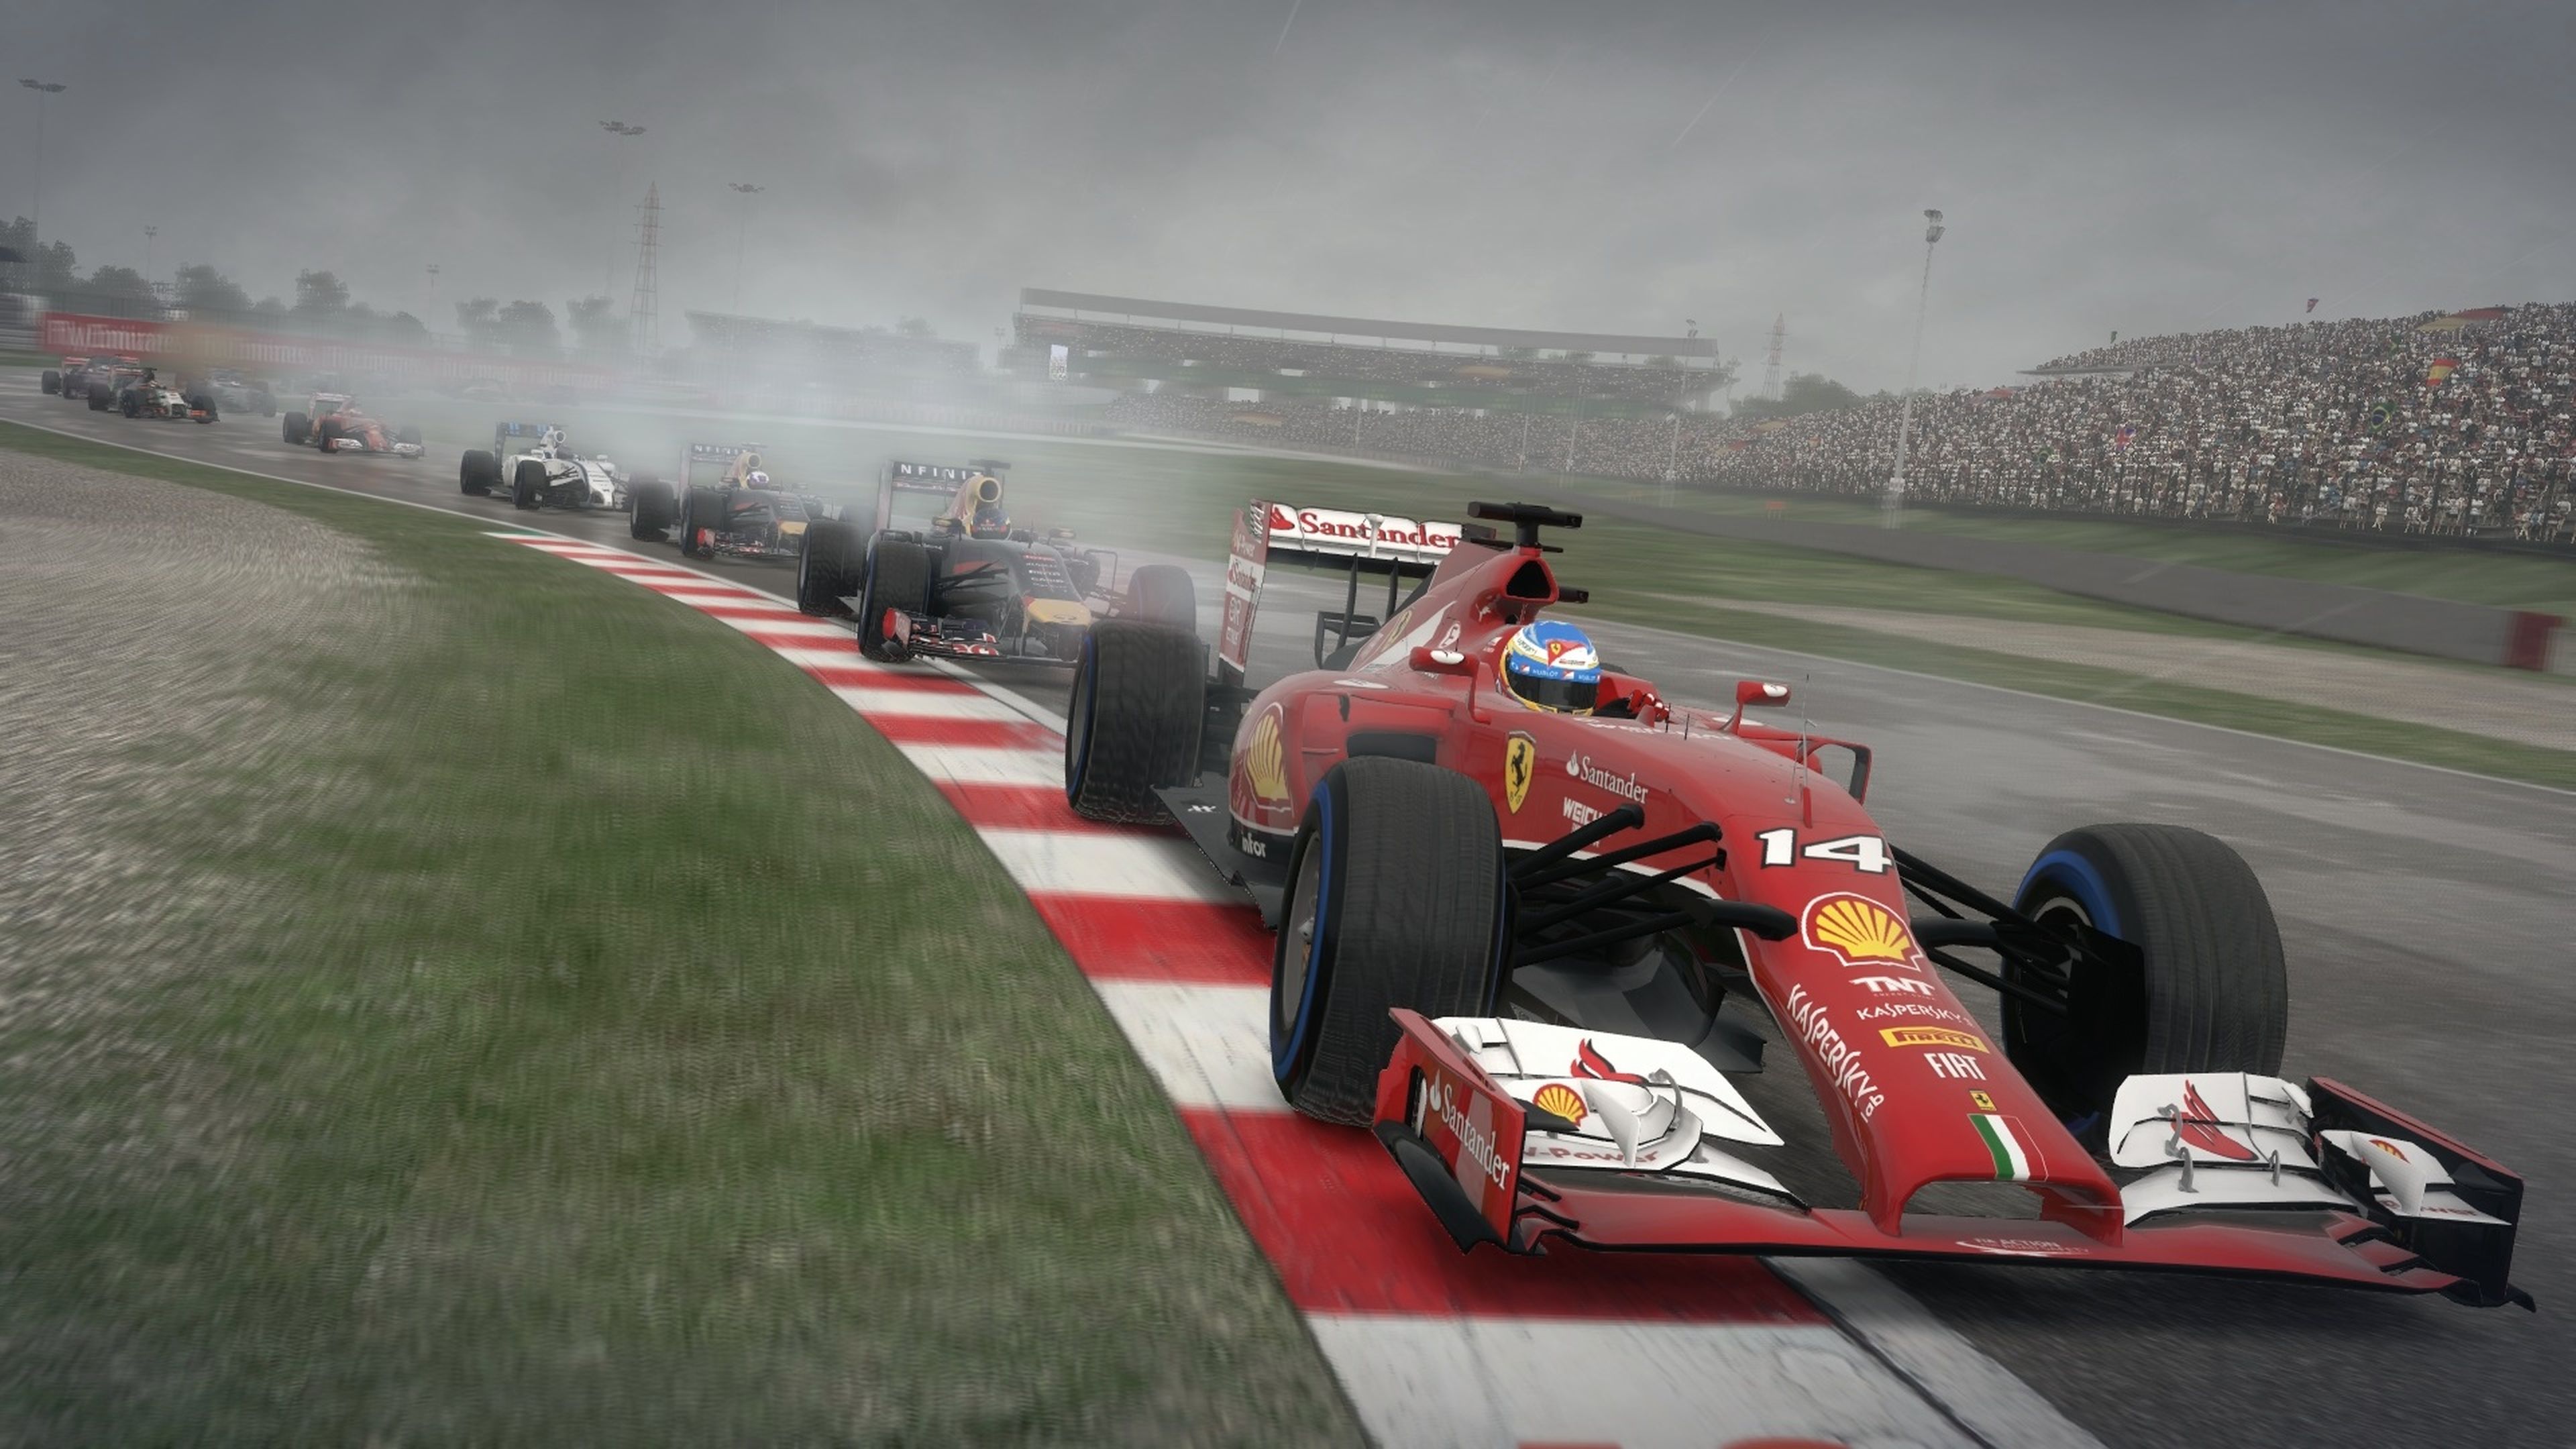 Análisis de F1 2014 para PS3, Xbox 360 y PC